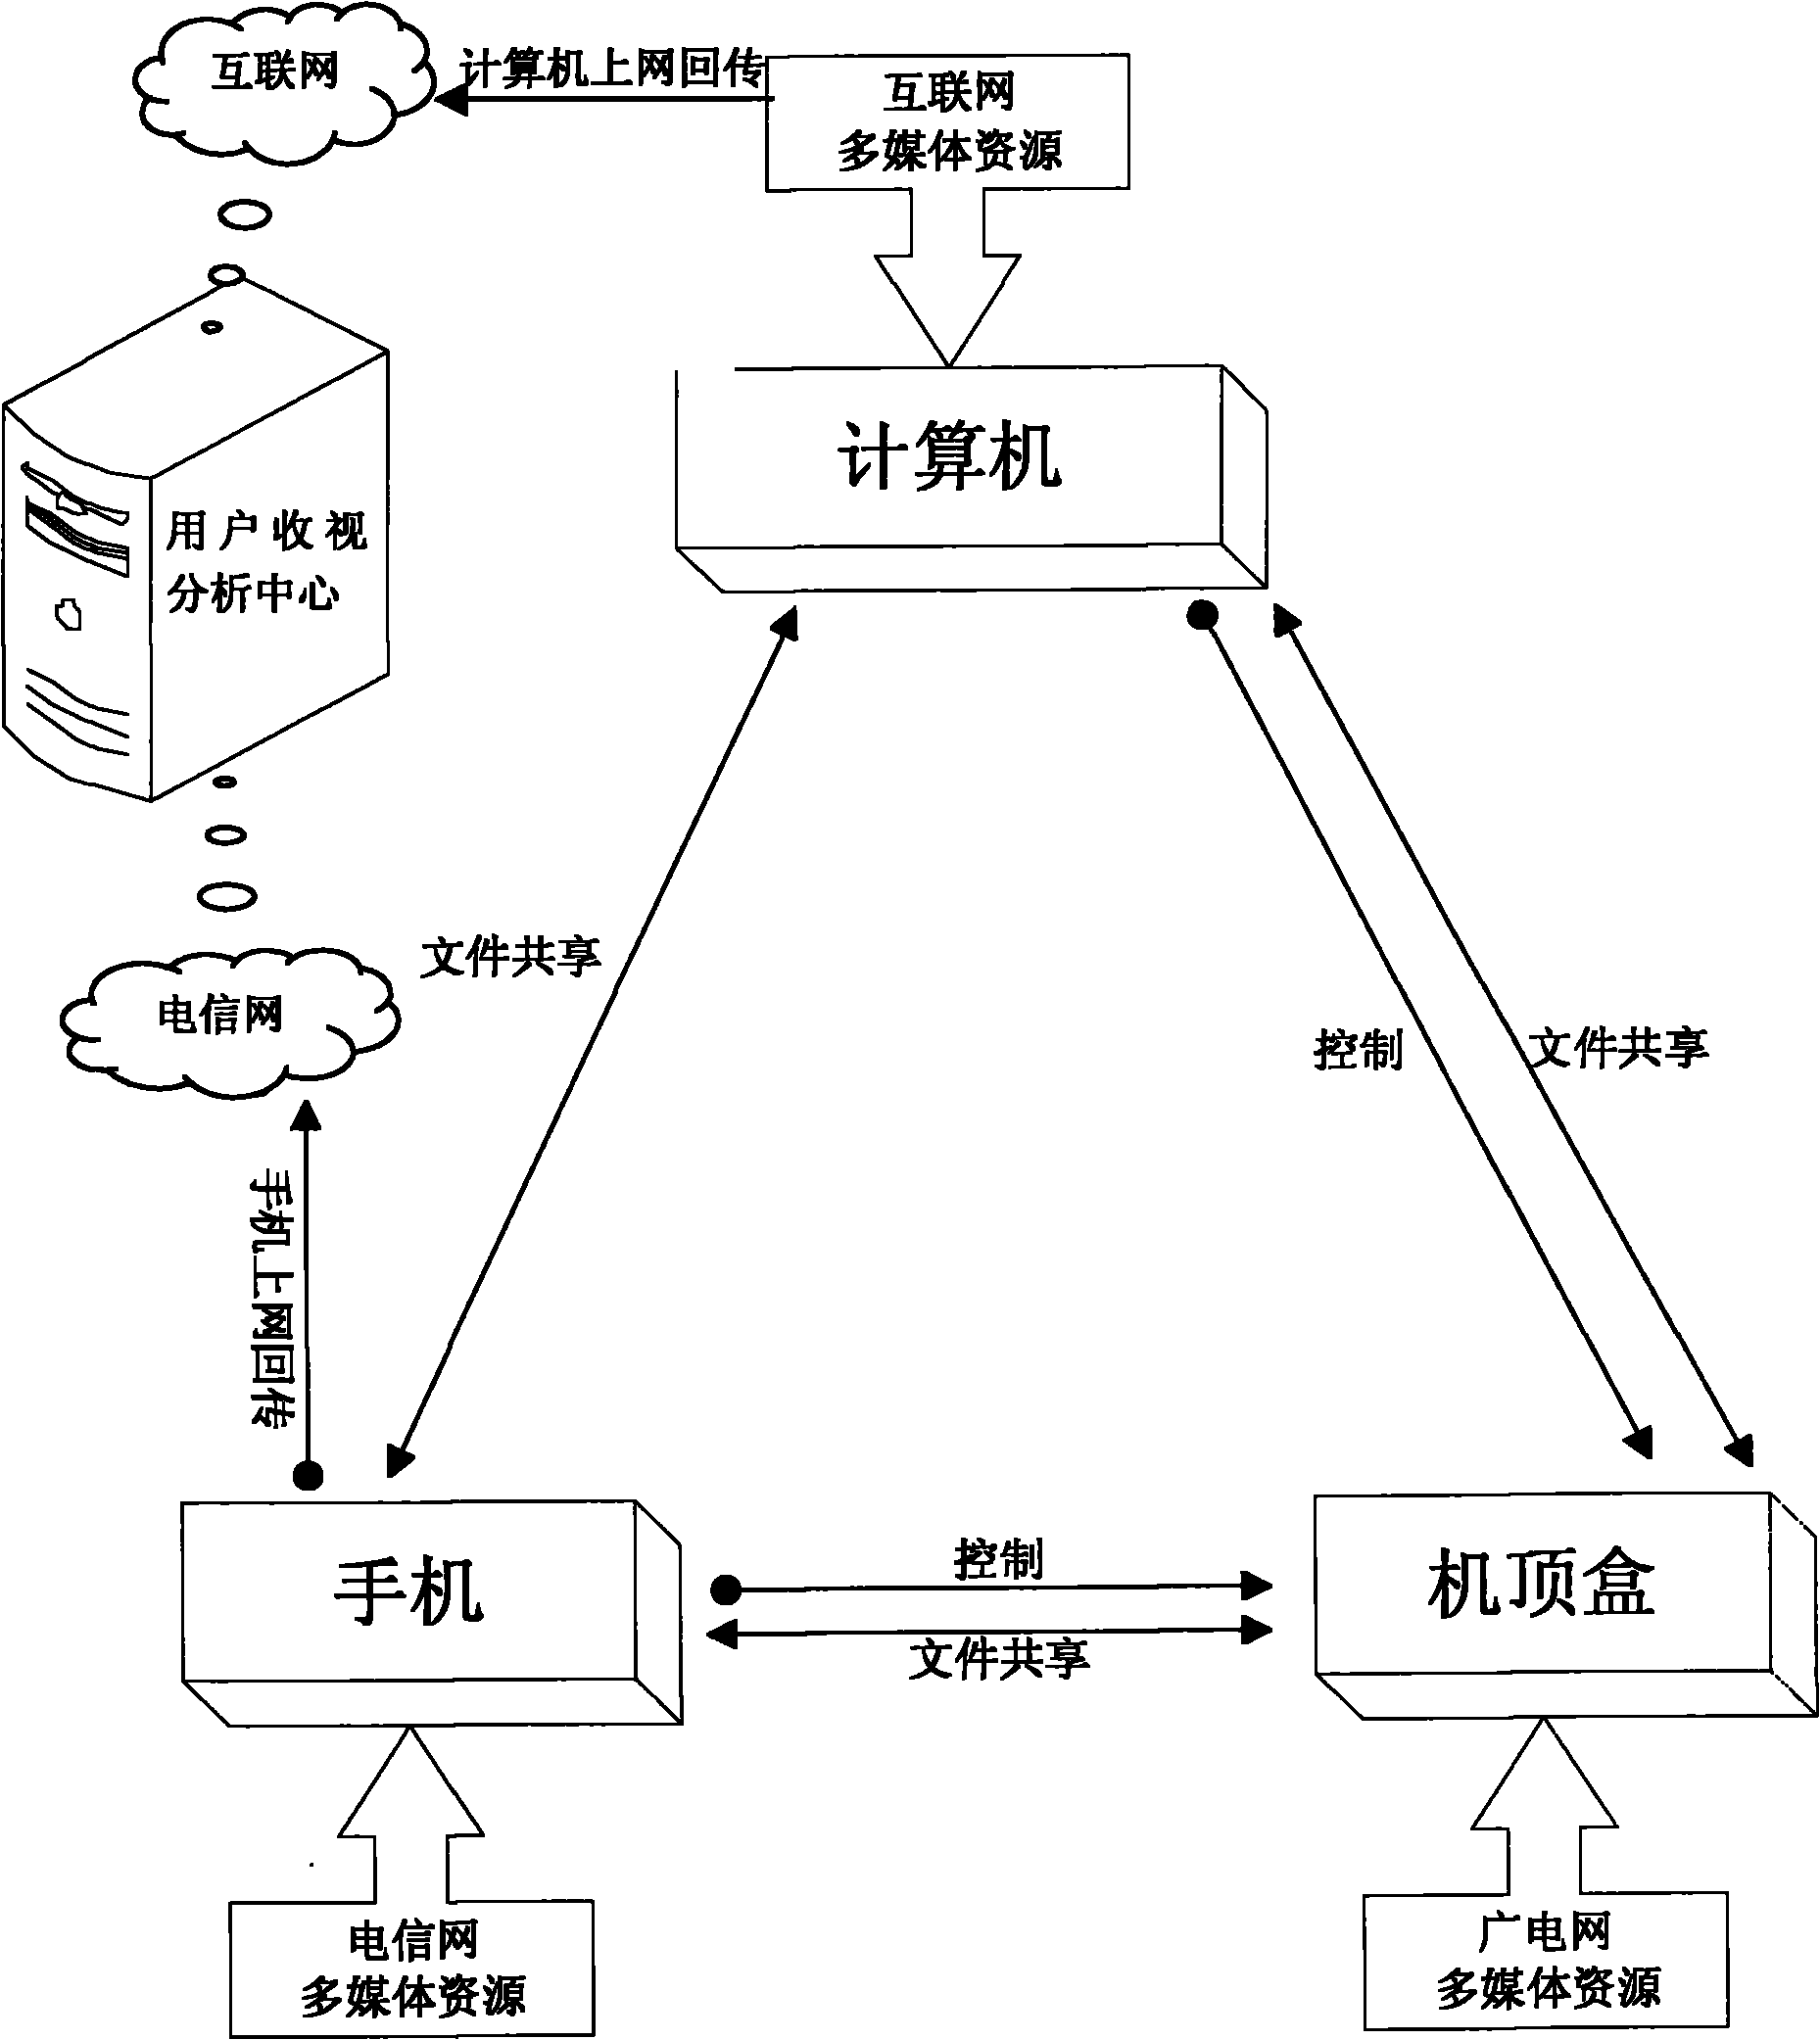 Cross-media interaction system